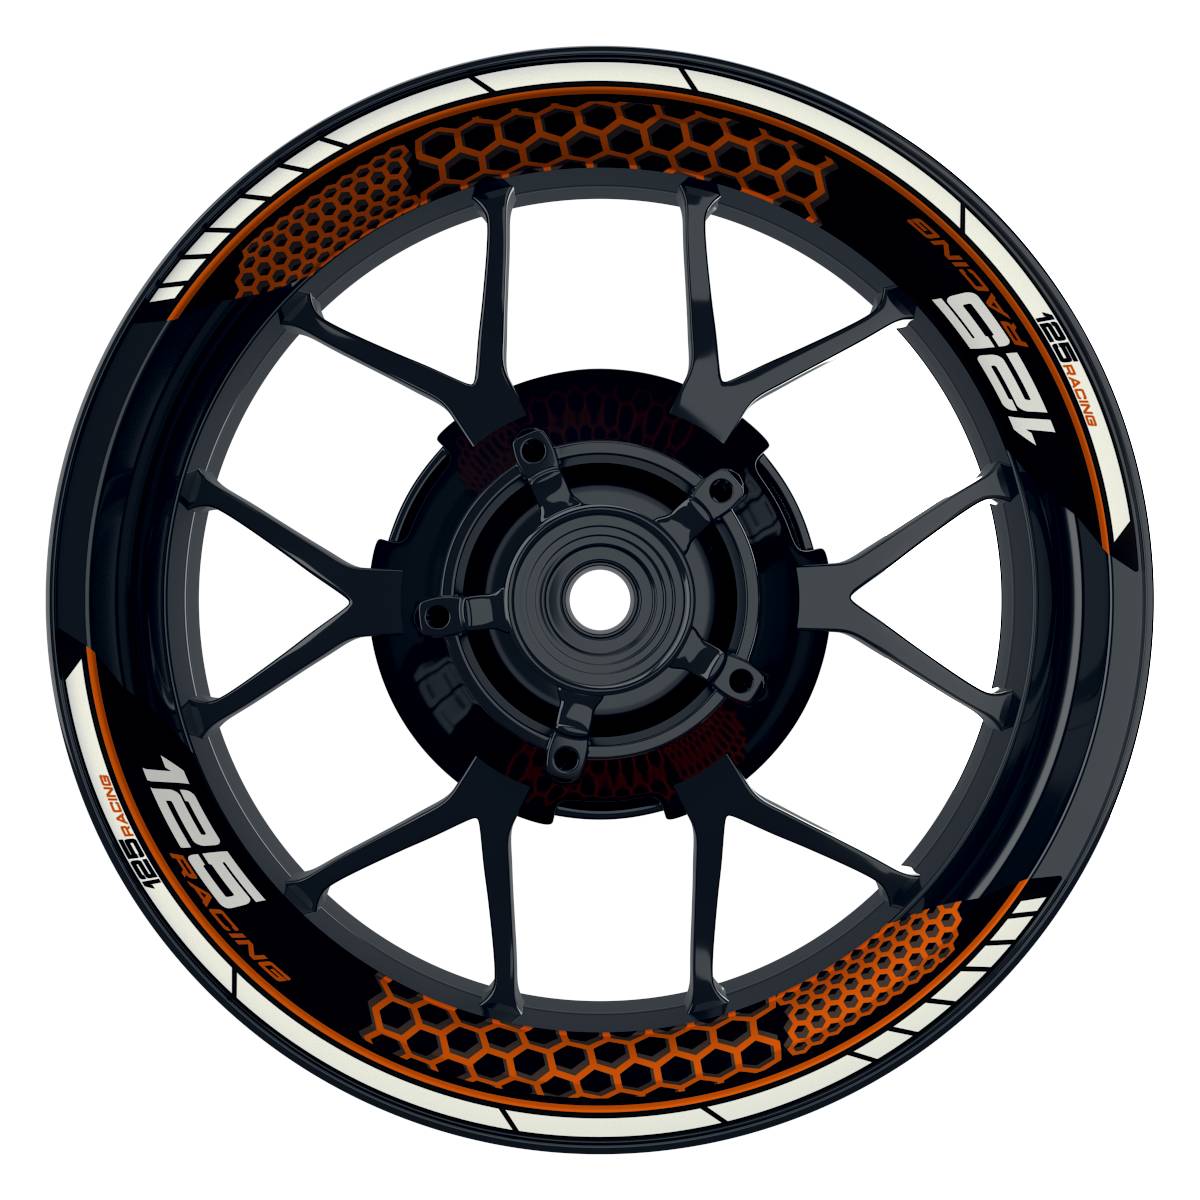 KTM Racing 125 Hexagon schwarz orange Frontansicht